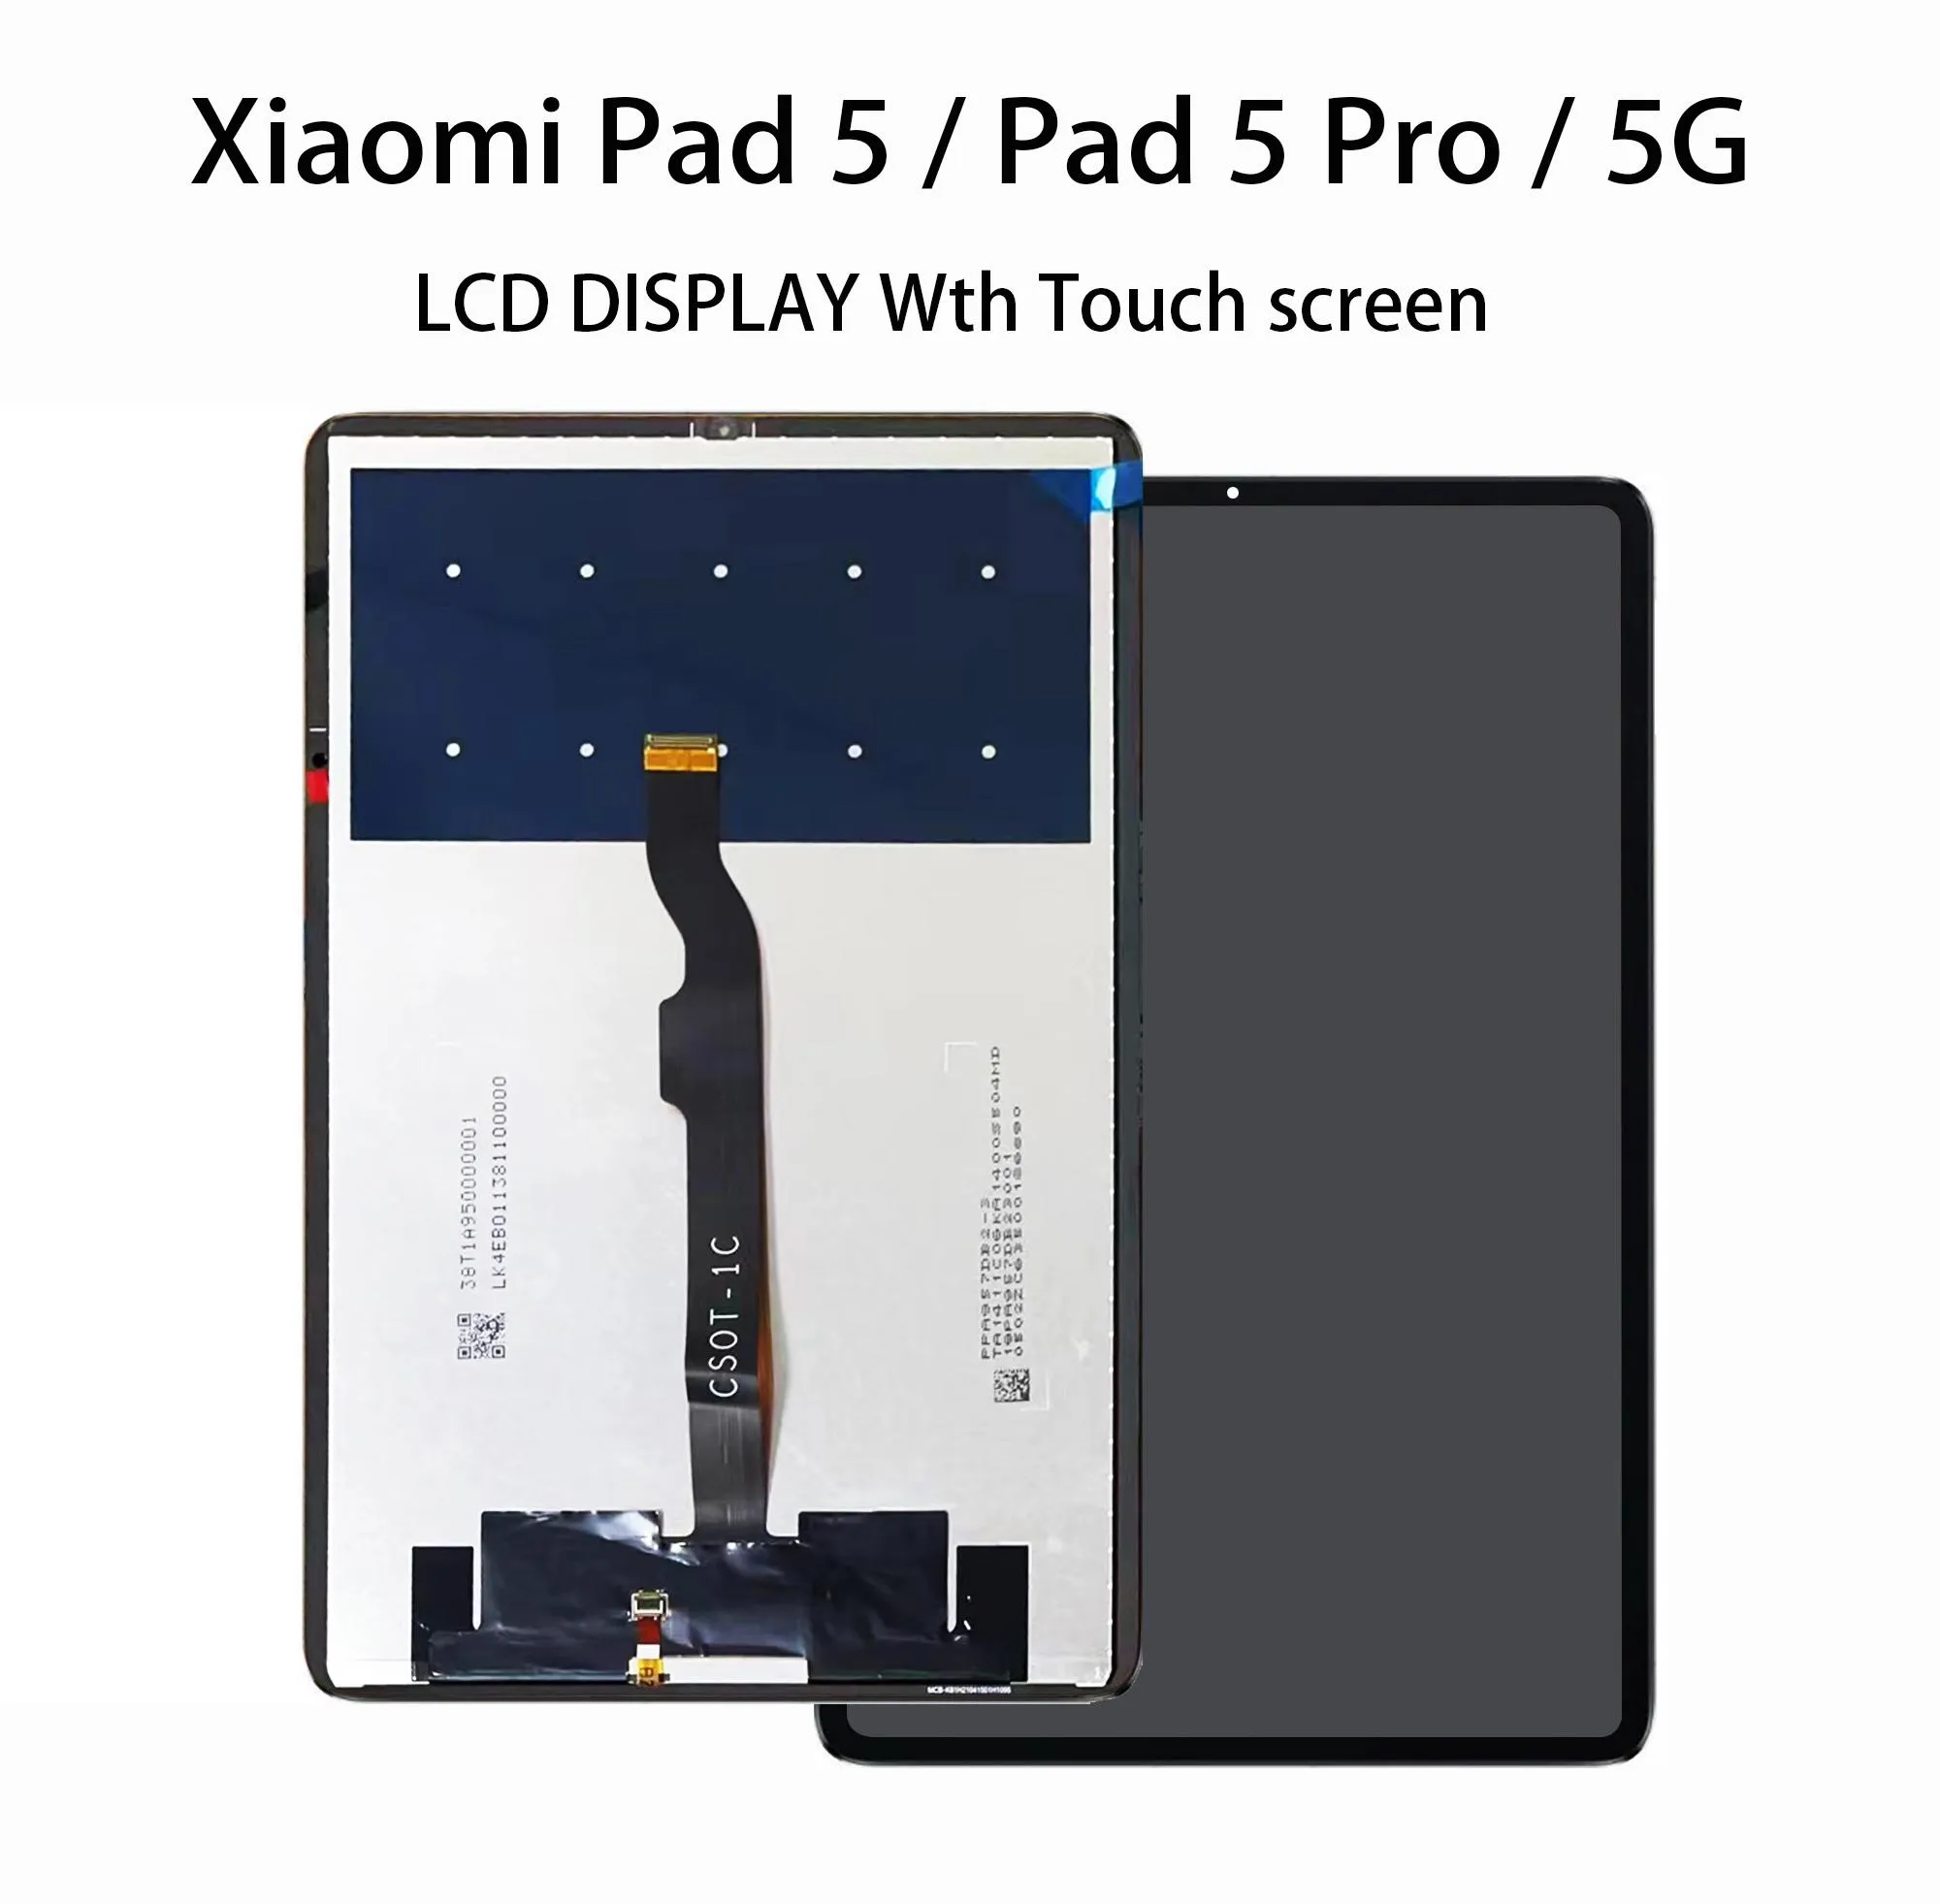 Panele 100% Nowy oryginalny wyświetlacz LCD dla Xiaomi Pad 5 / Pad 5 Pro / 5G Xiaomi Mi Pad 5 LCD macierz wyświetlacza z digitalizatorem ekranu dotykowego